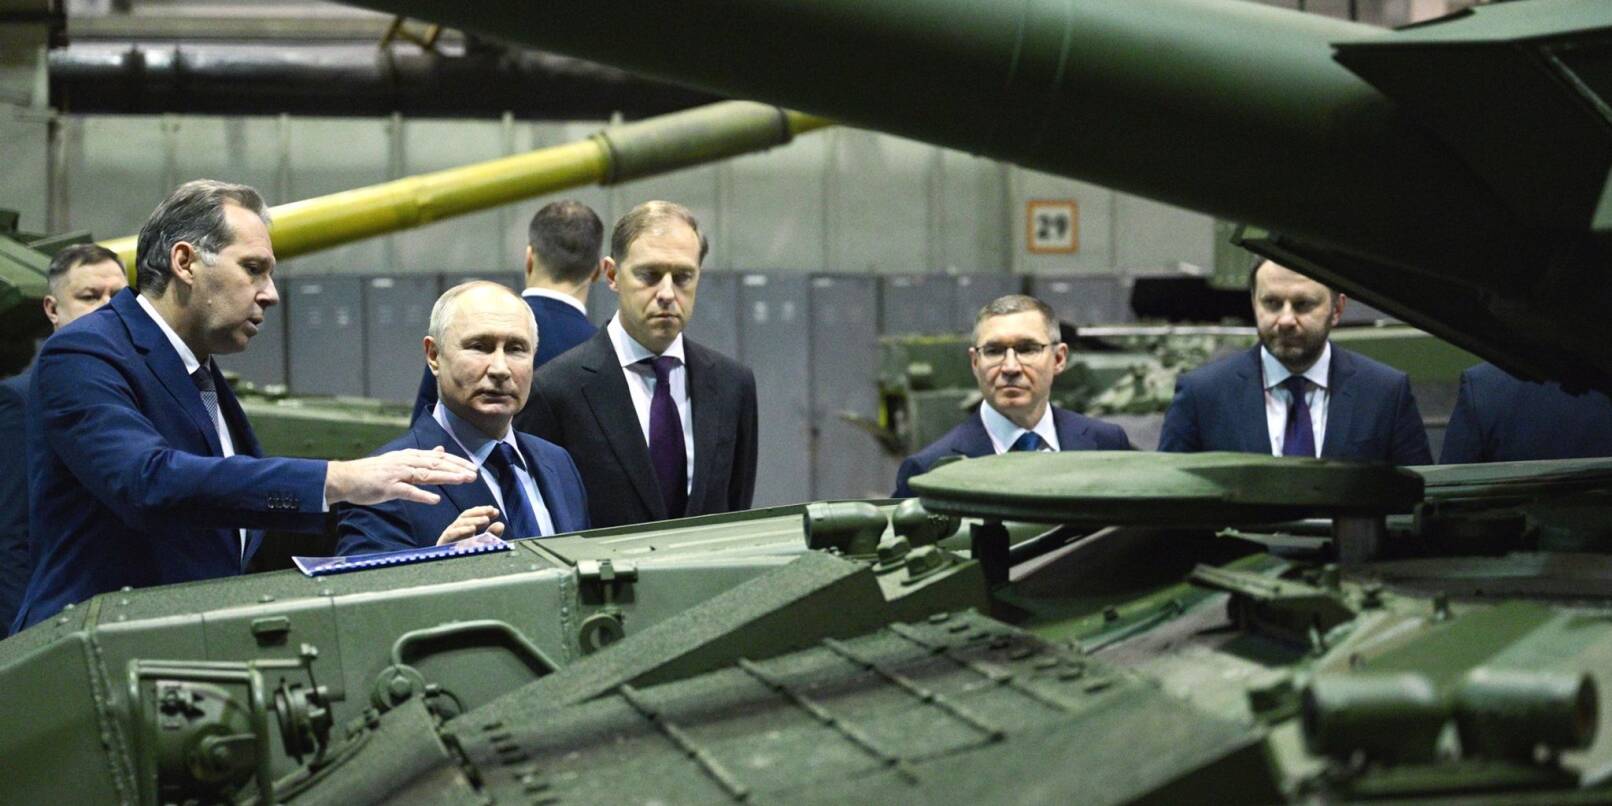 Kremlchef Wladimir Putin (3.v.l) besucht die Forschungs- und Produktionsgesellschaft Uralwagonsawod (Uralwaggonwerk) in Nischni Tagil.